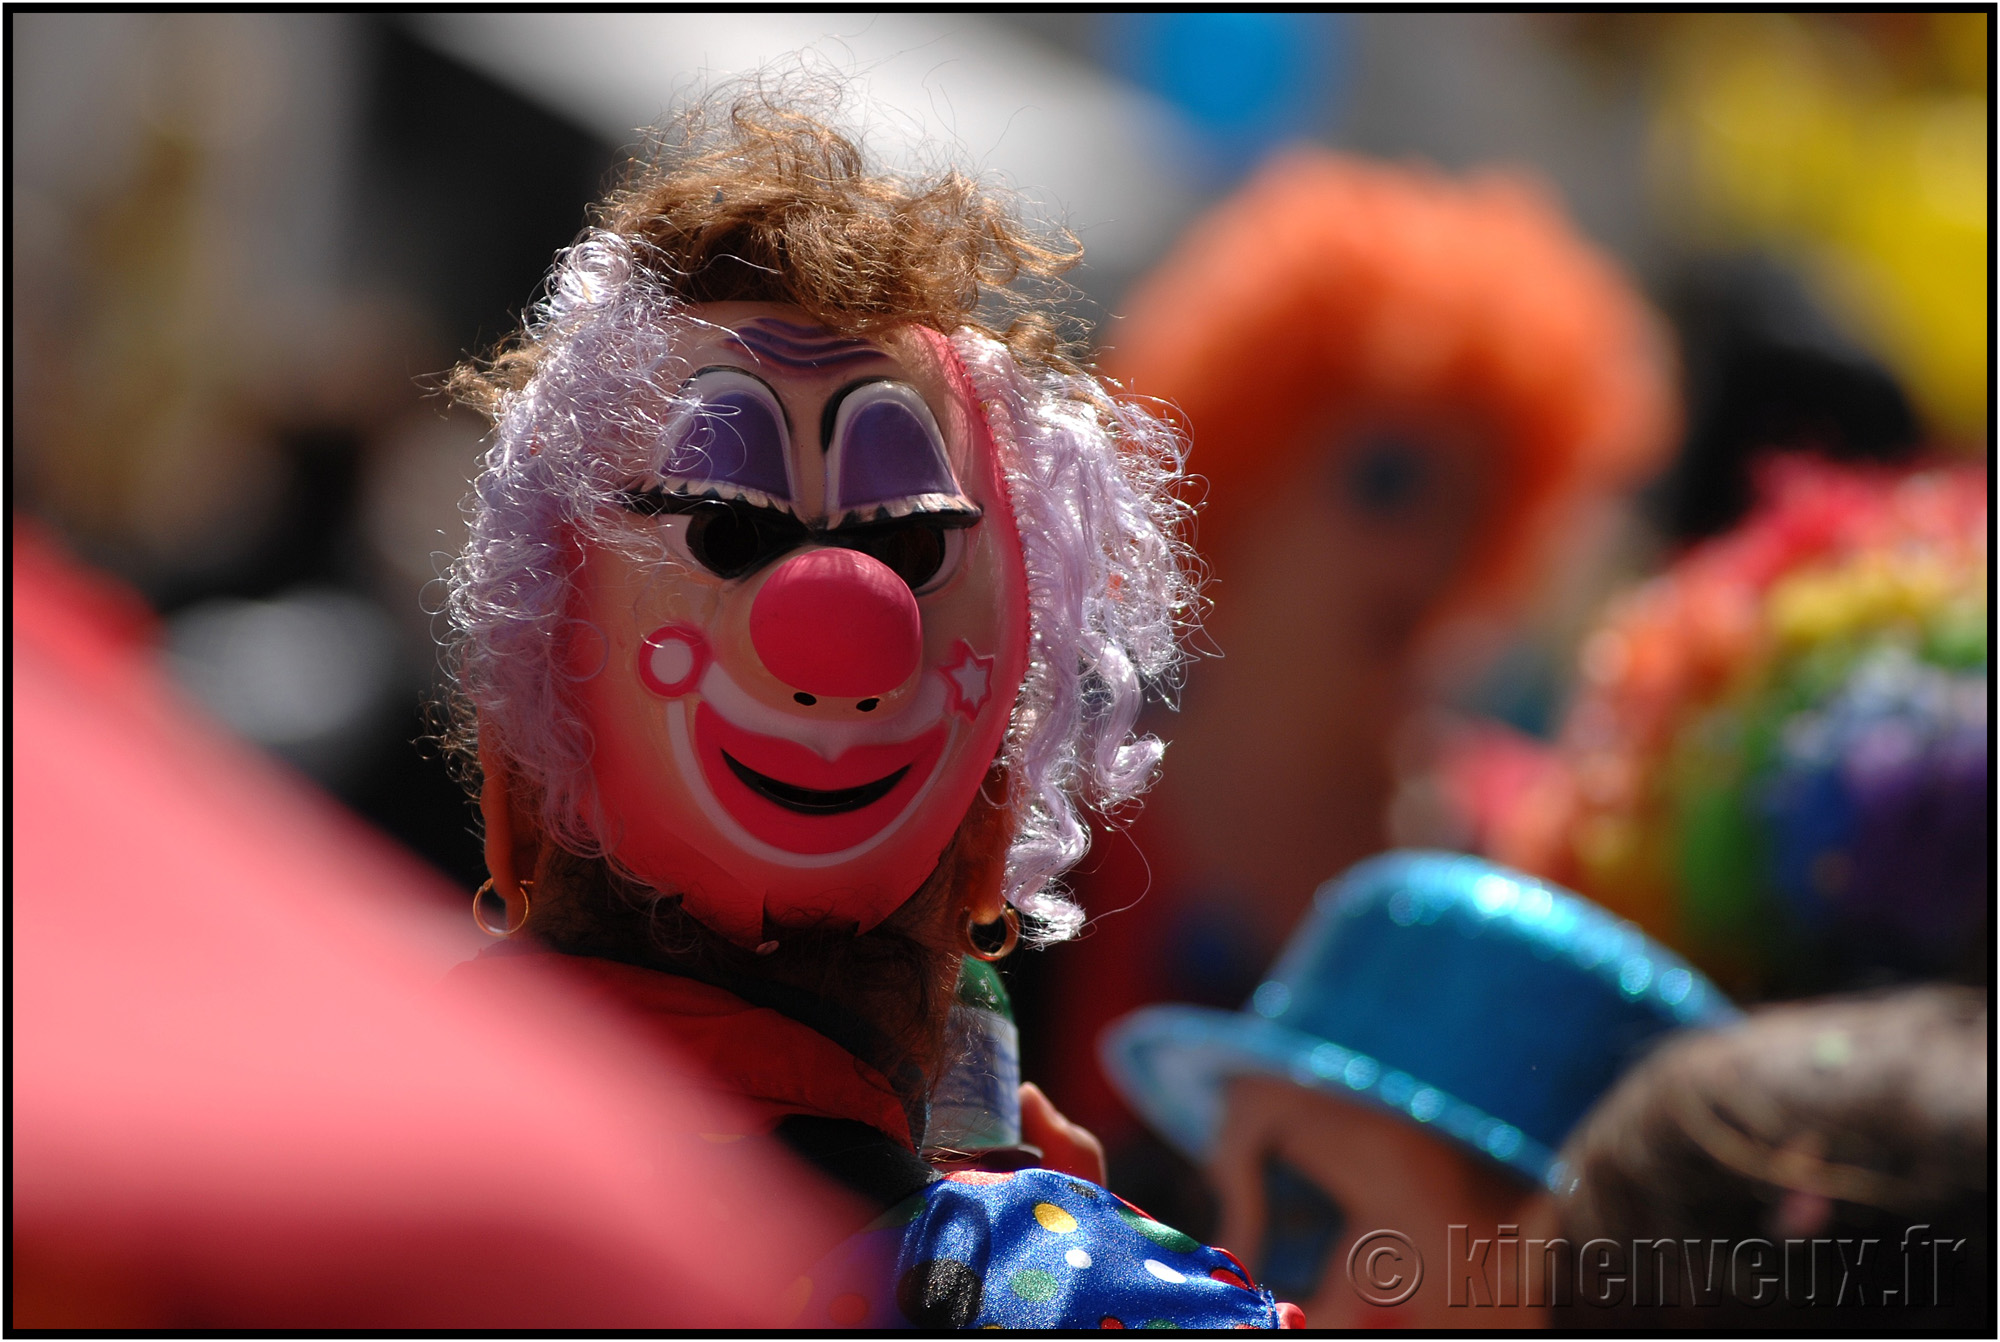 kinenveux_27_carnaval2015lr.jpg - Carnaval des Enfants 2015 - La Rochelle